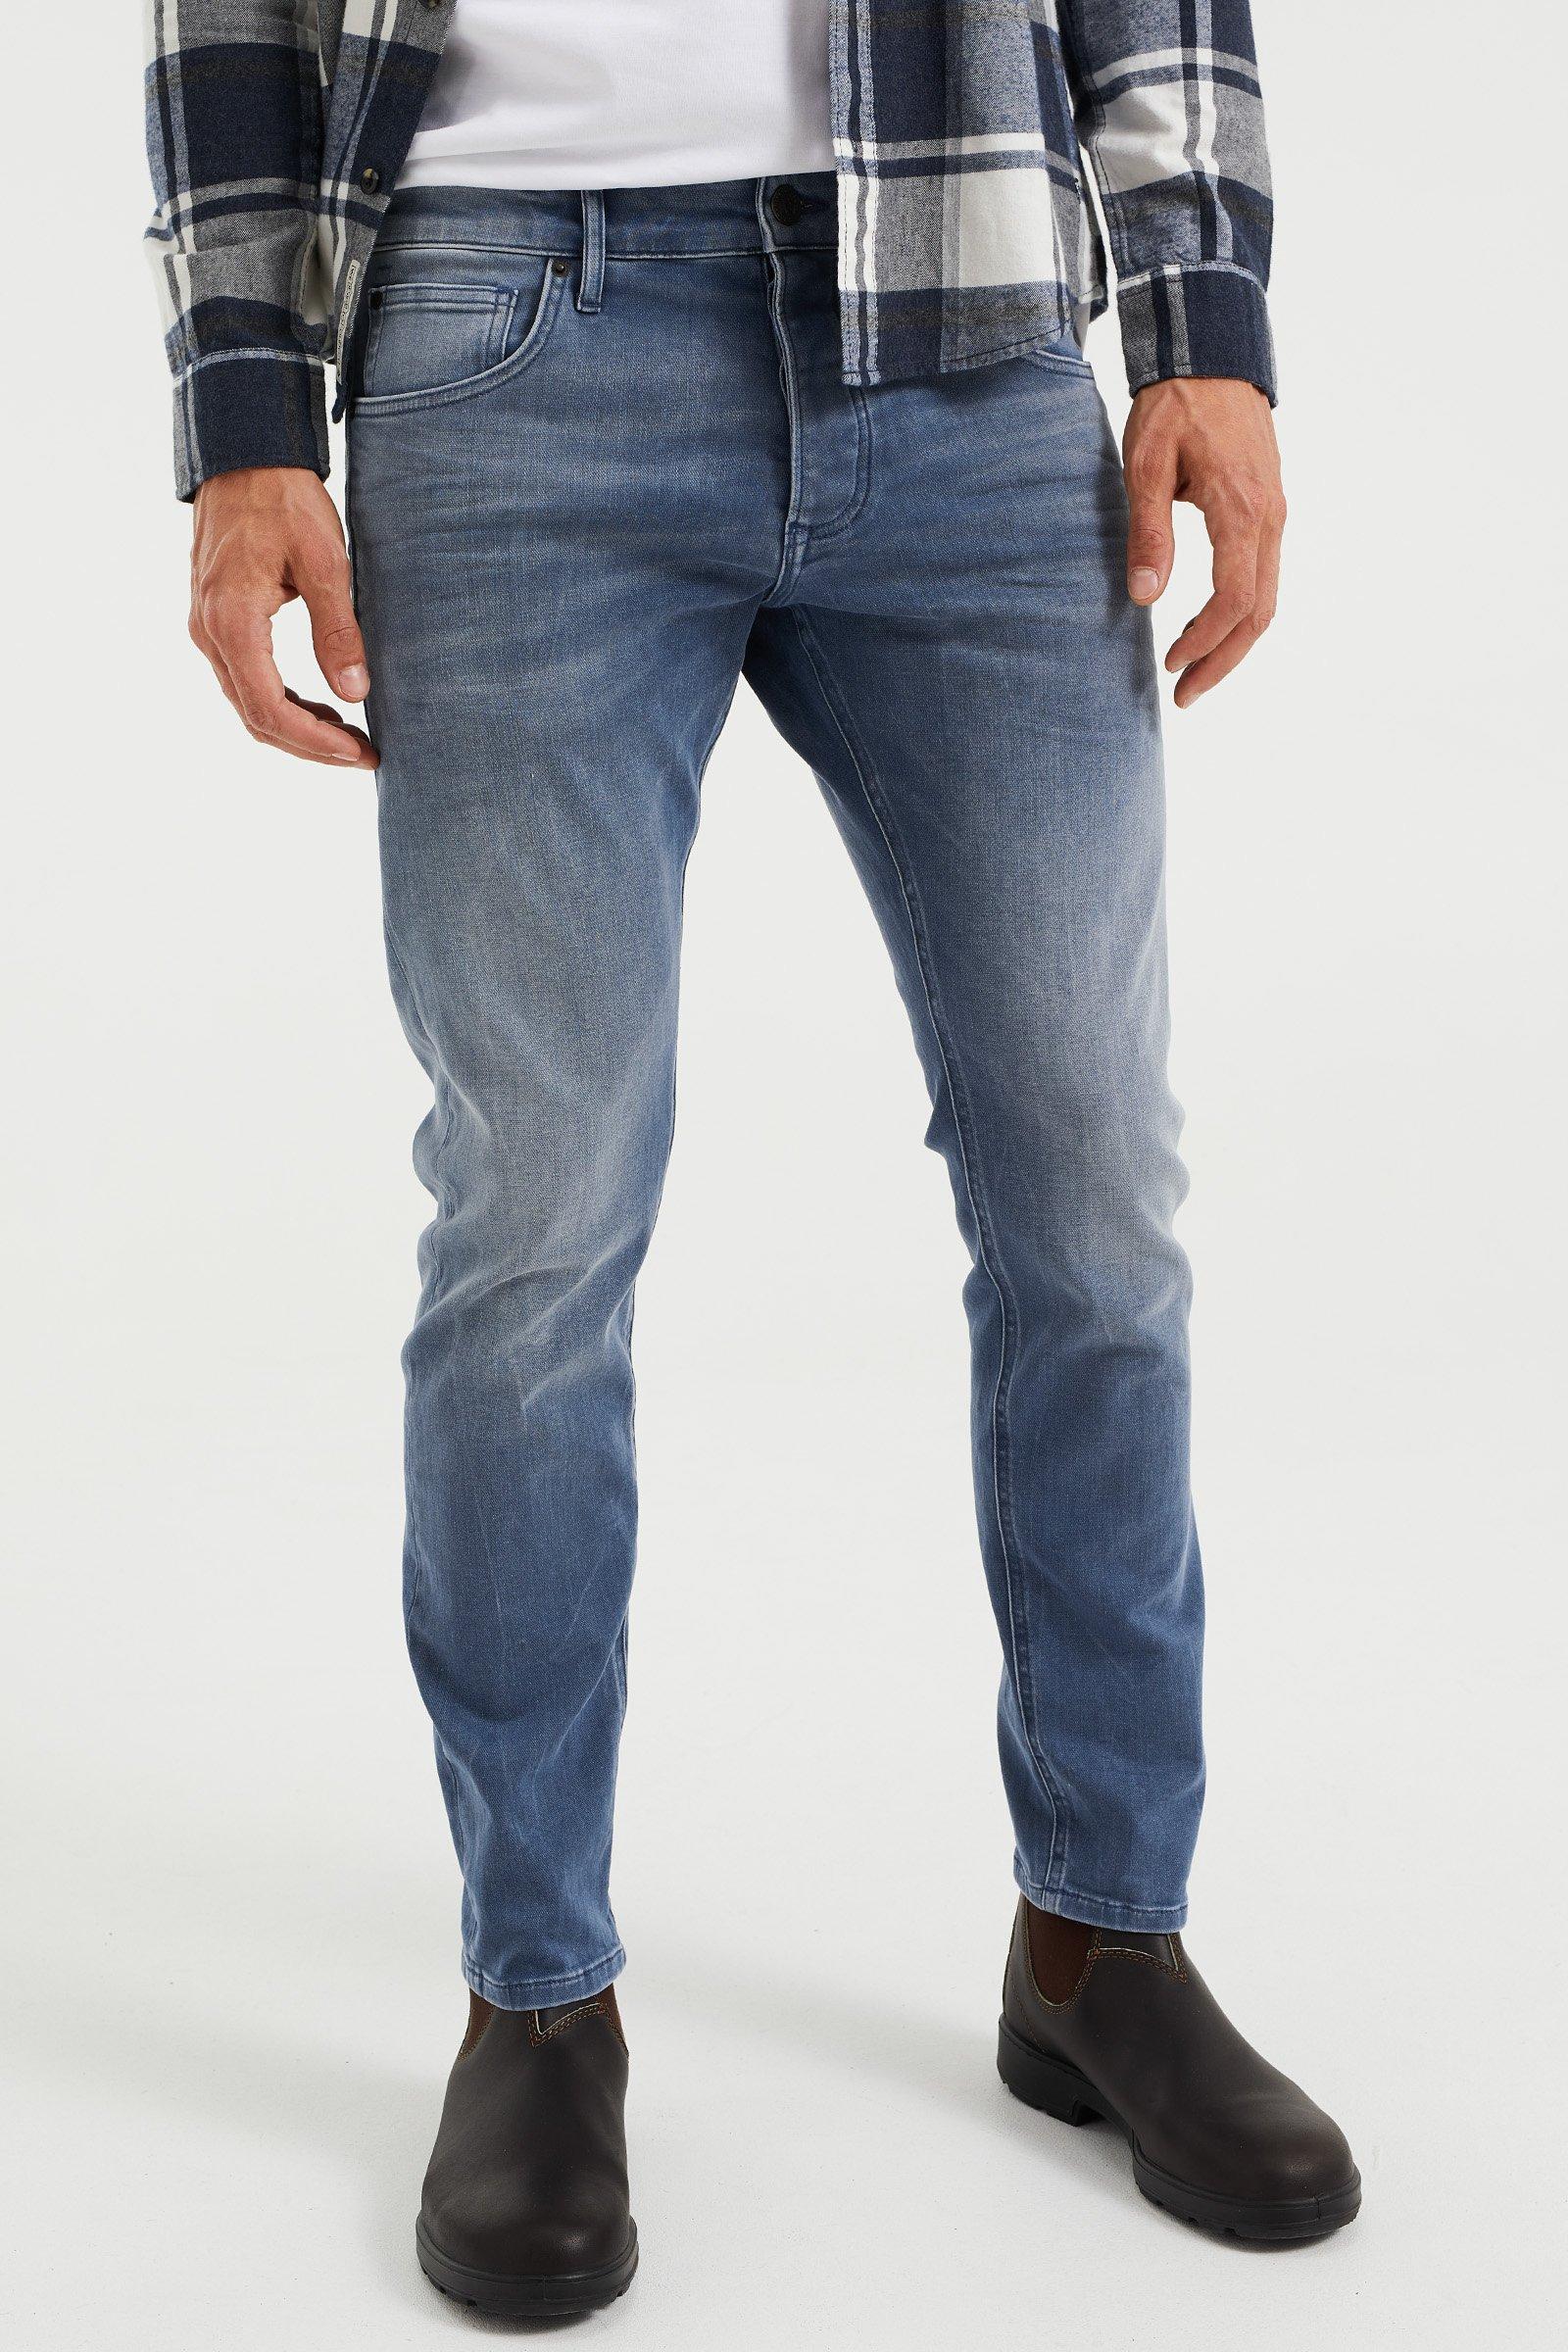 Image of WE Fashion 5-Pocket-Jeans - L34/34